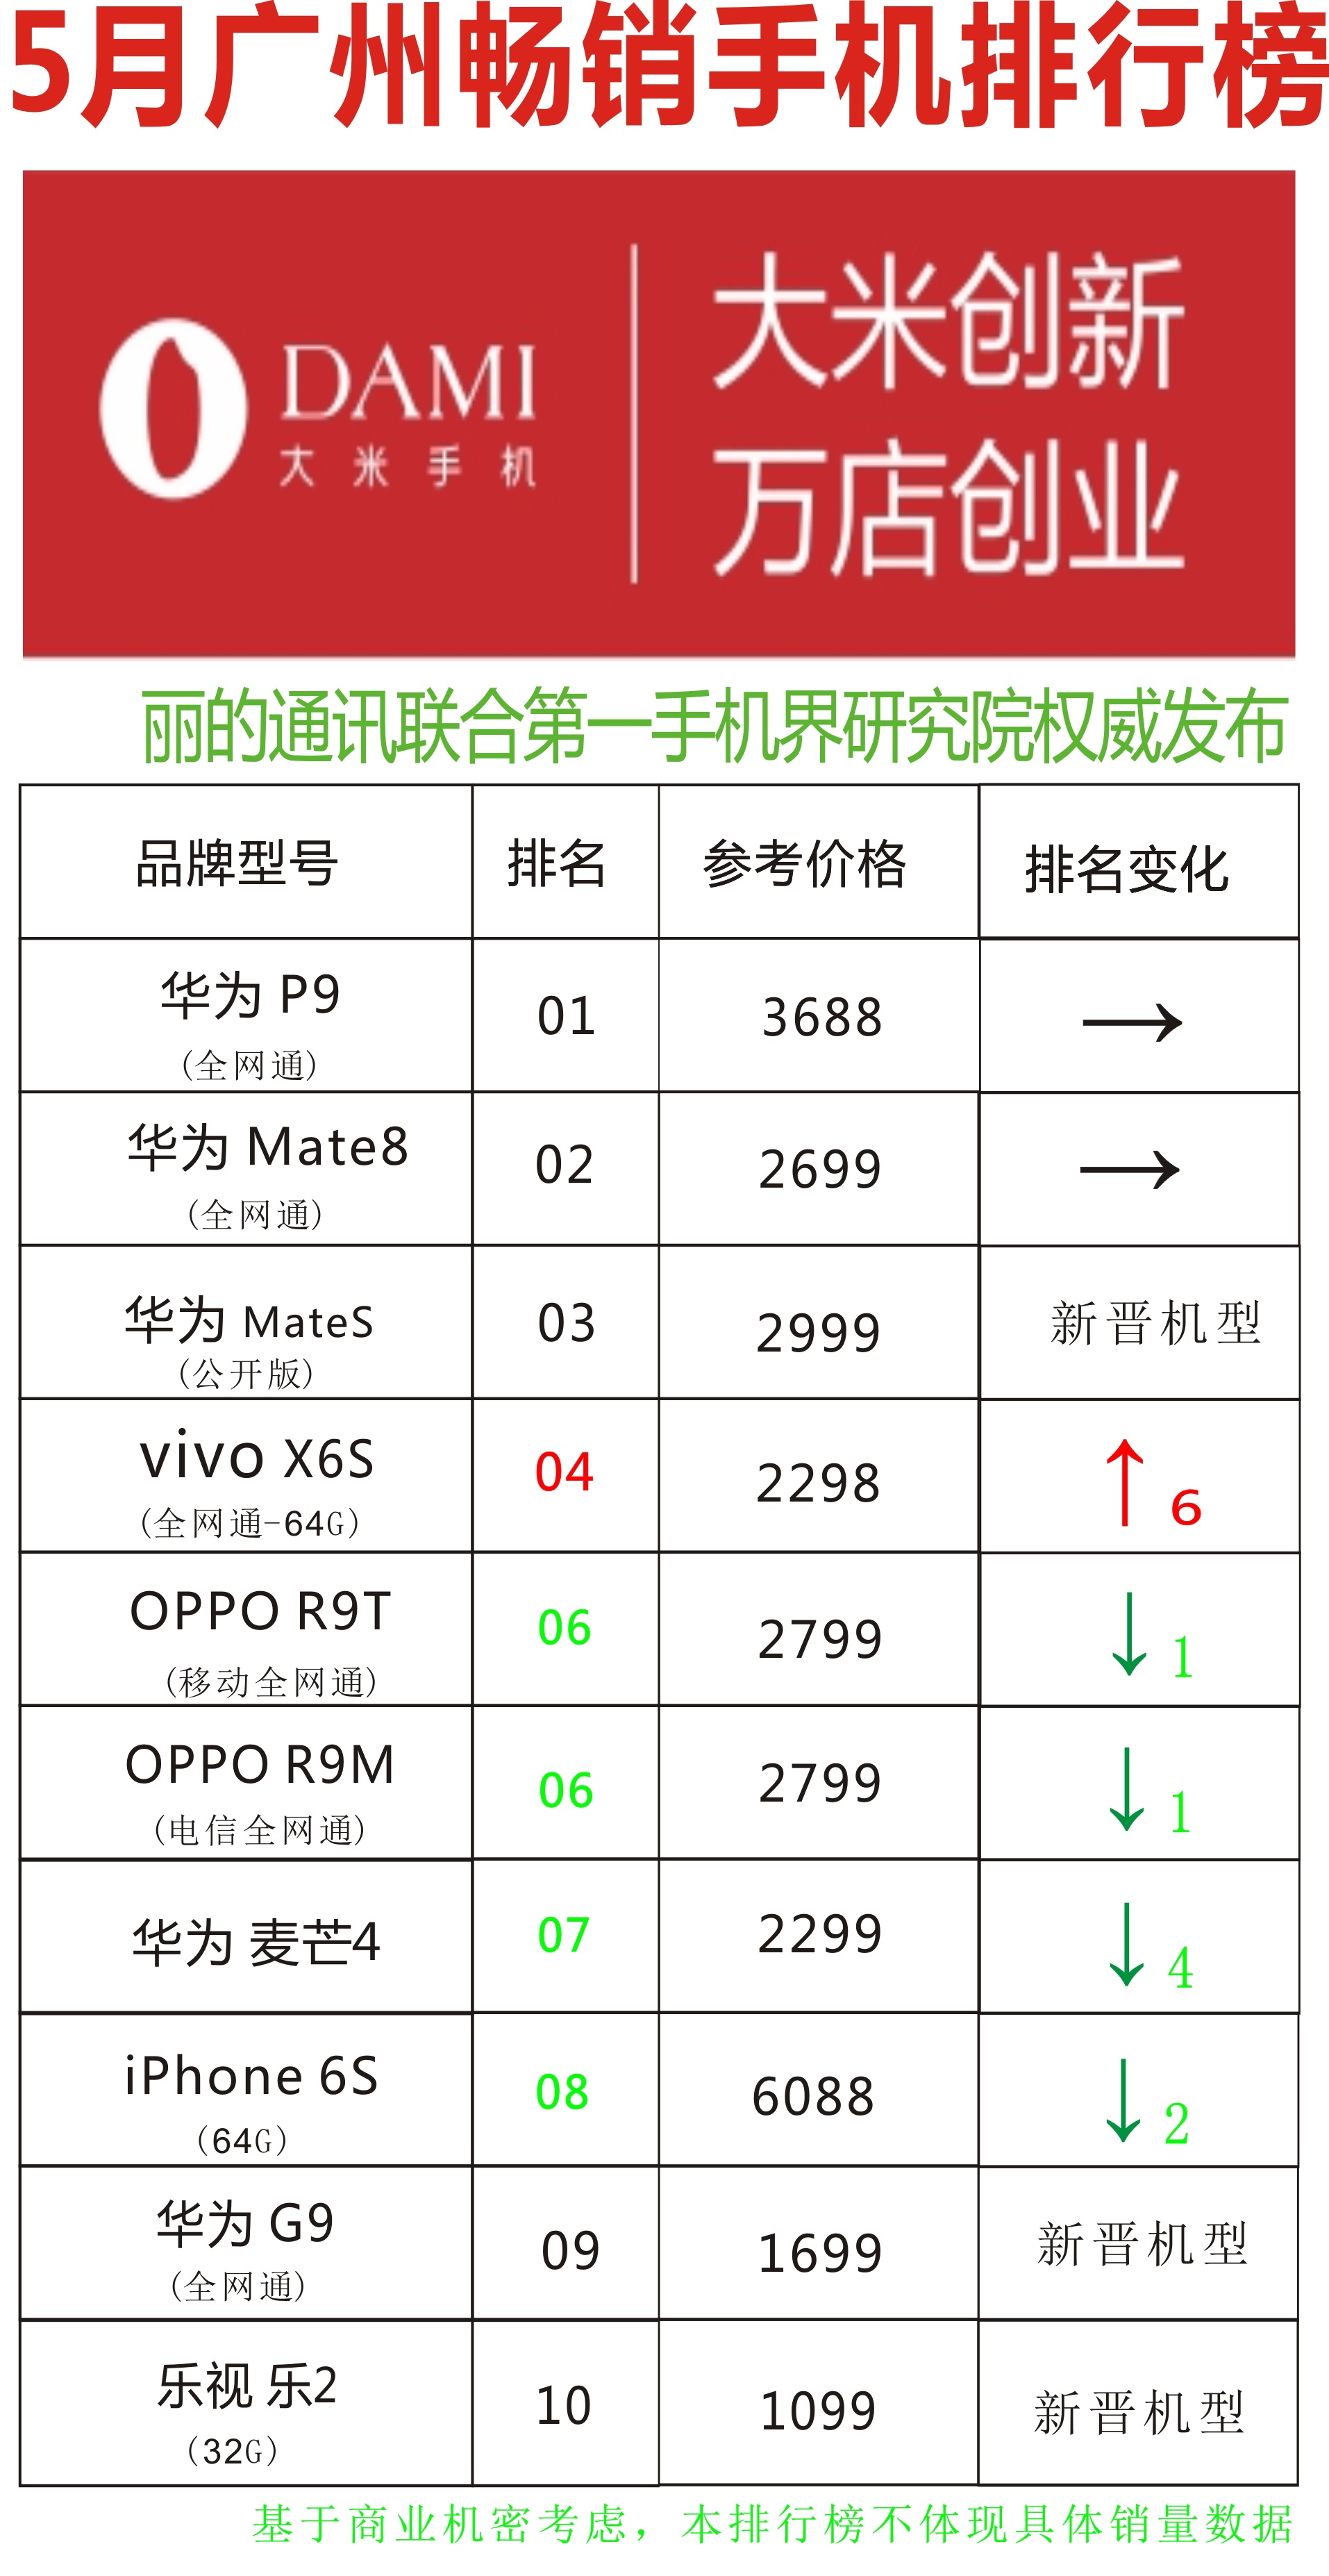 5月广州畅销手机排行榜:华为 P9蝉联榜单首位